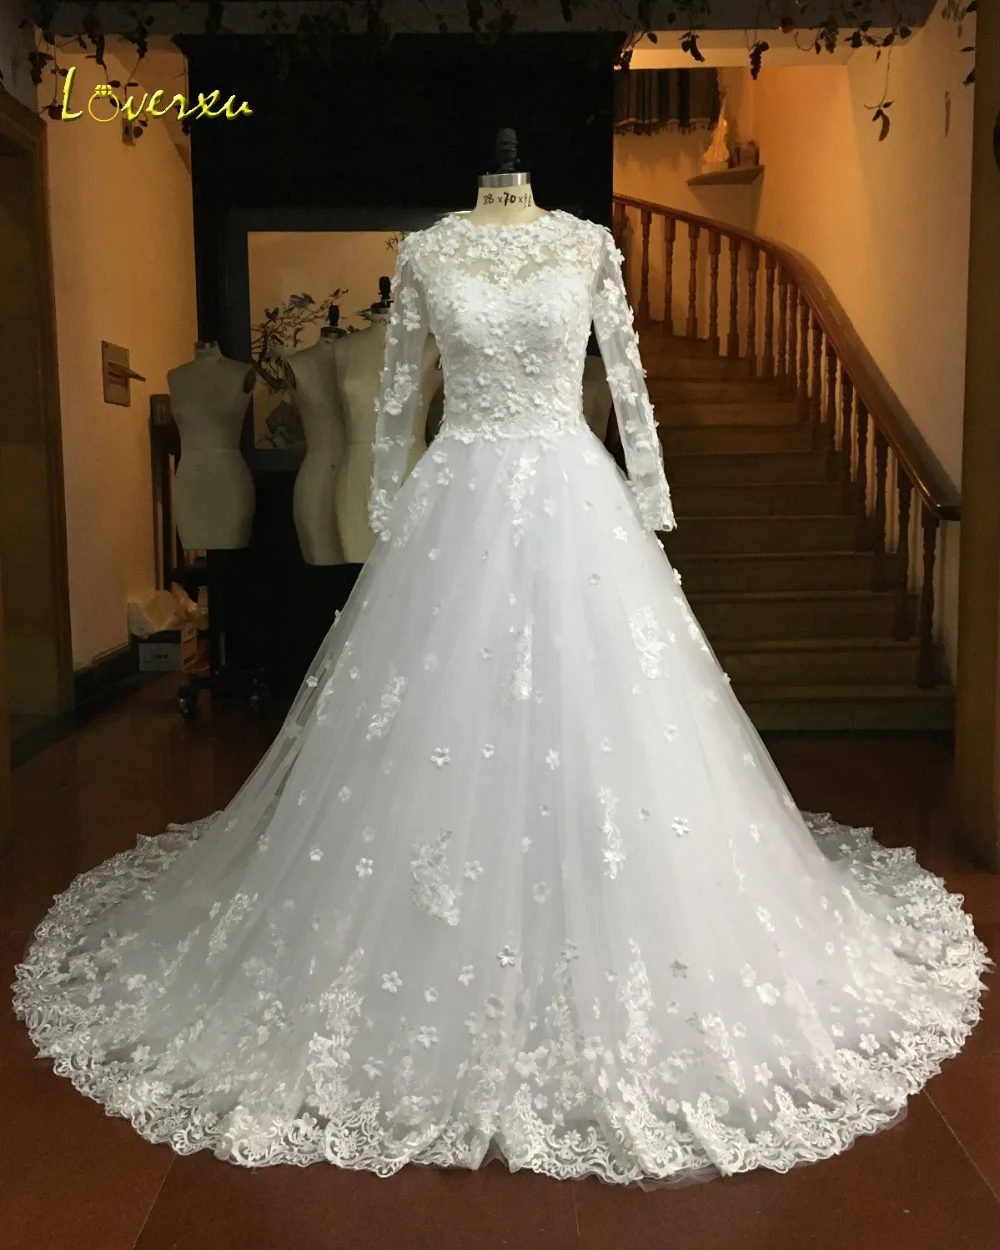 Loverxu Vestido De Noiva с длинным рукавом Цветочные подвенечные платья аппликации Часовня Поезд линии Boho недорогое свадебное платье плюс Размеры